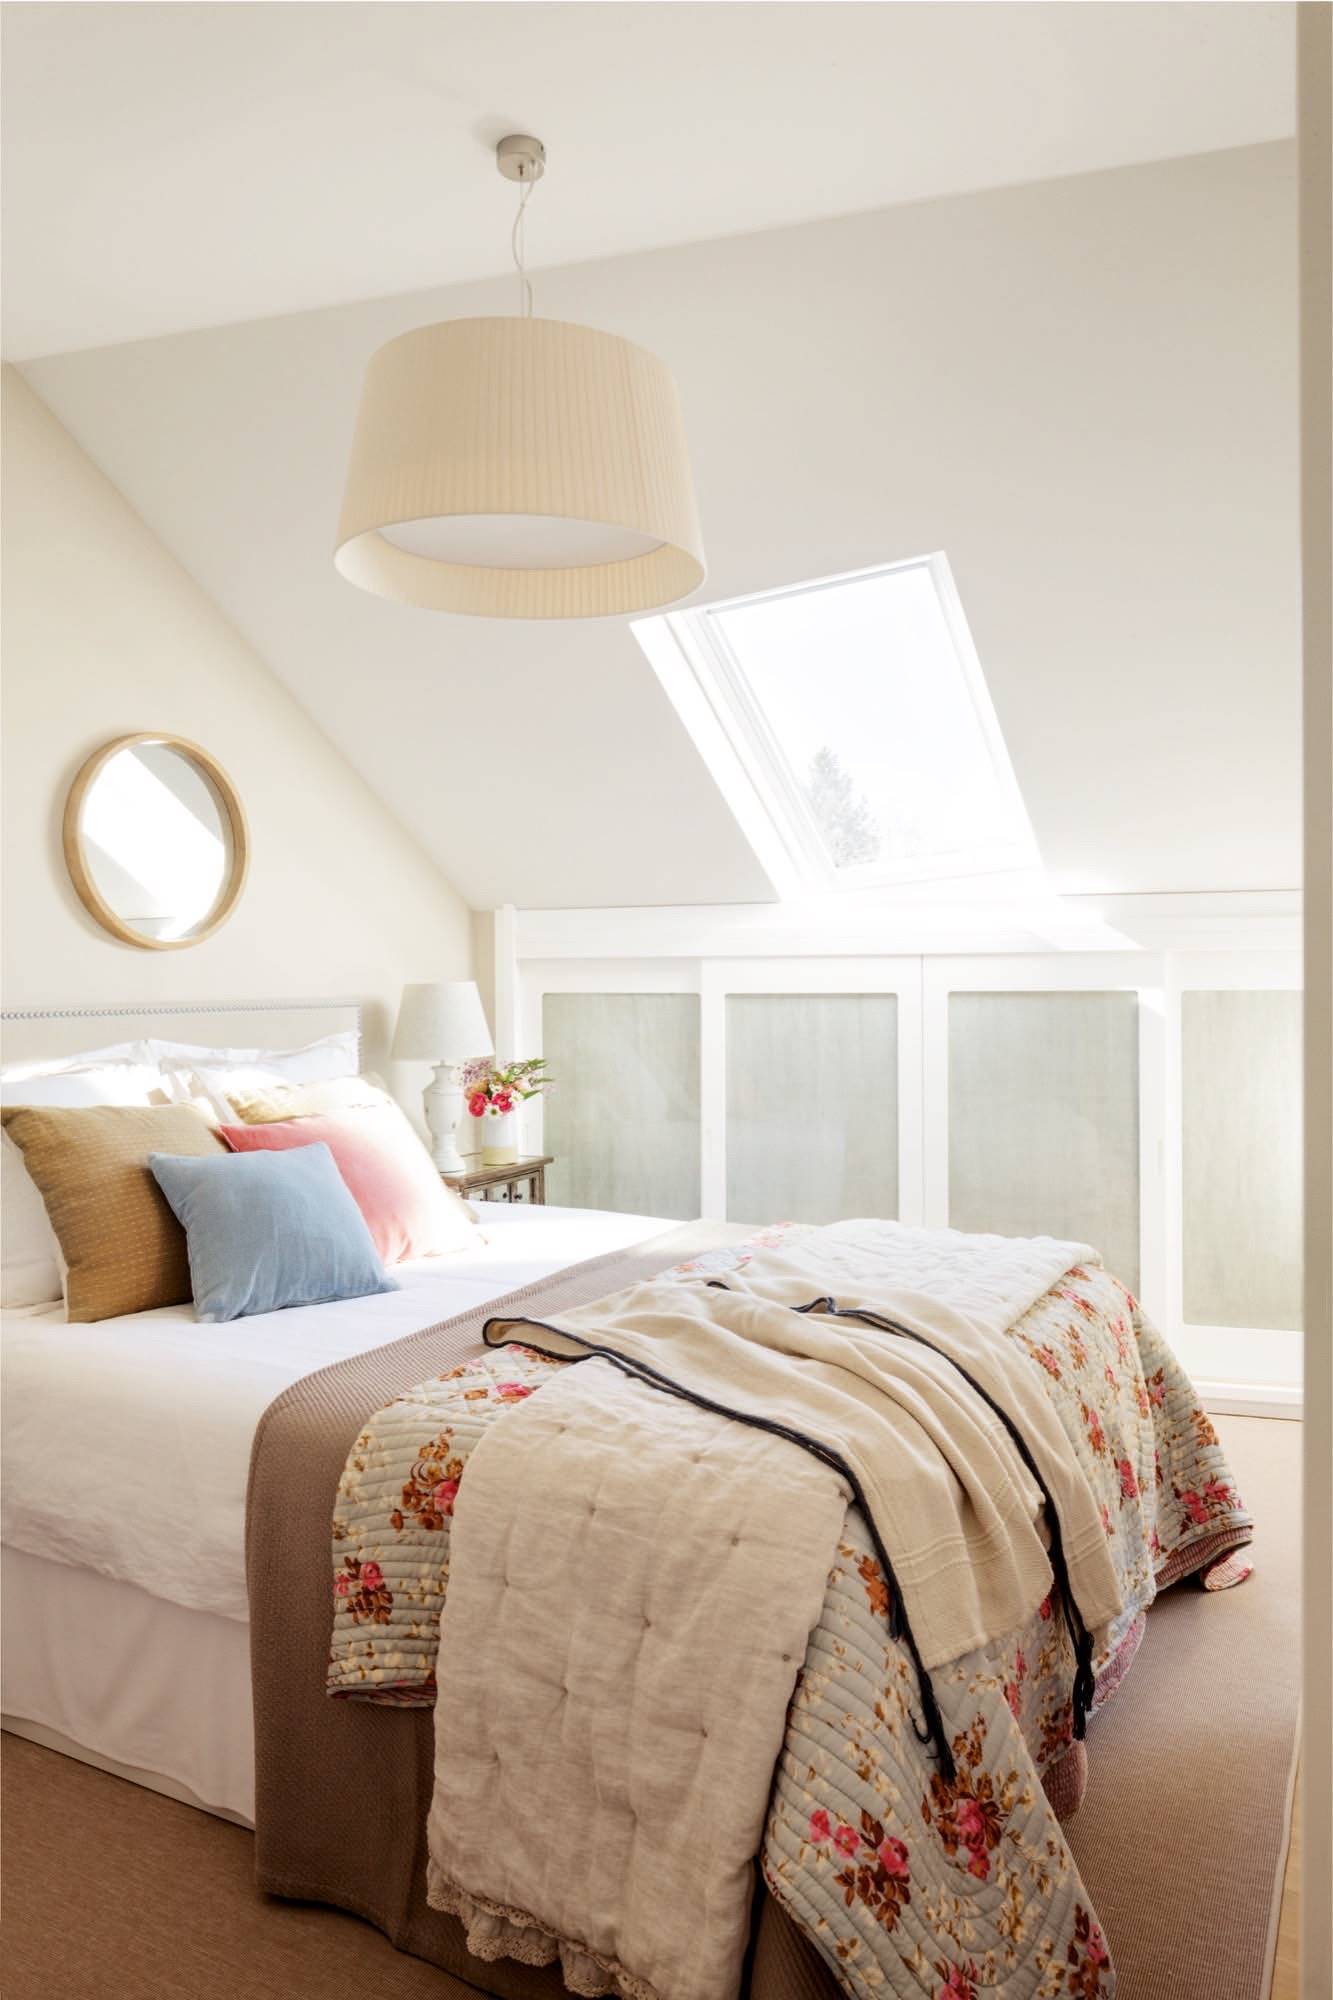 Dormitorio de estilo romántico decorado en tonos claros